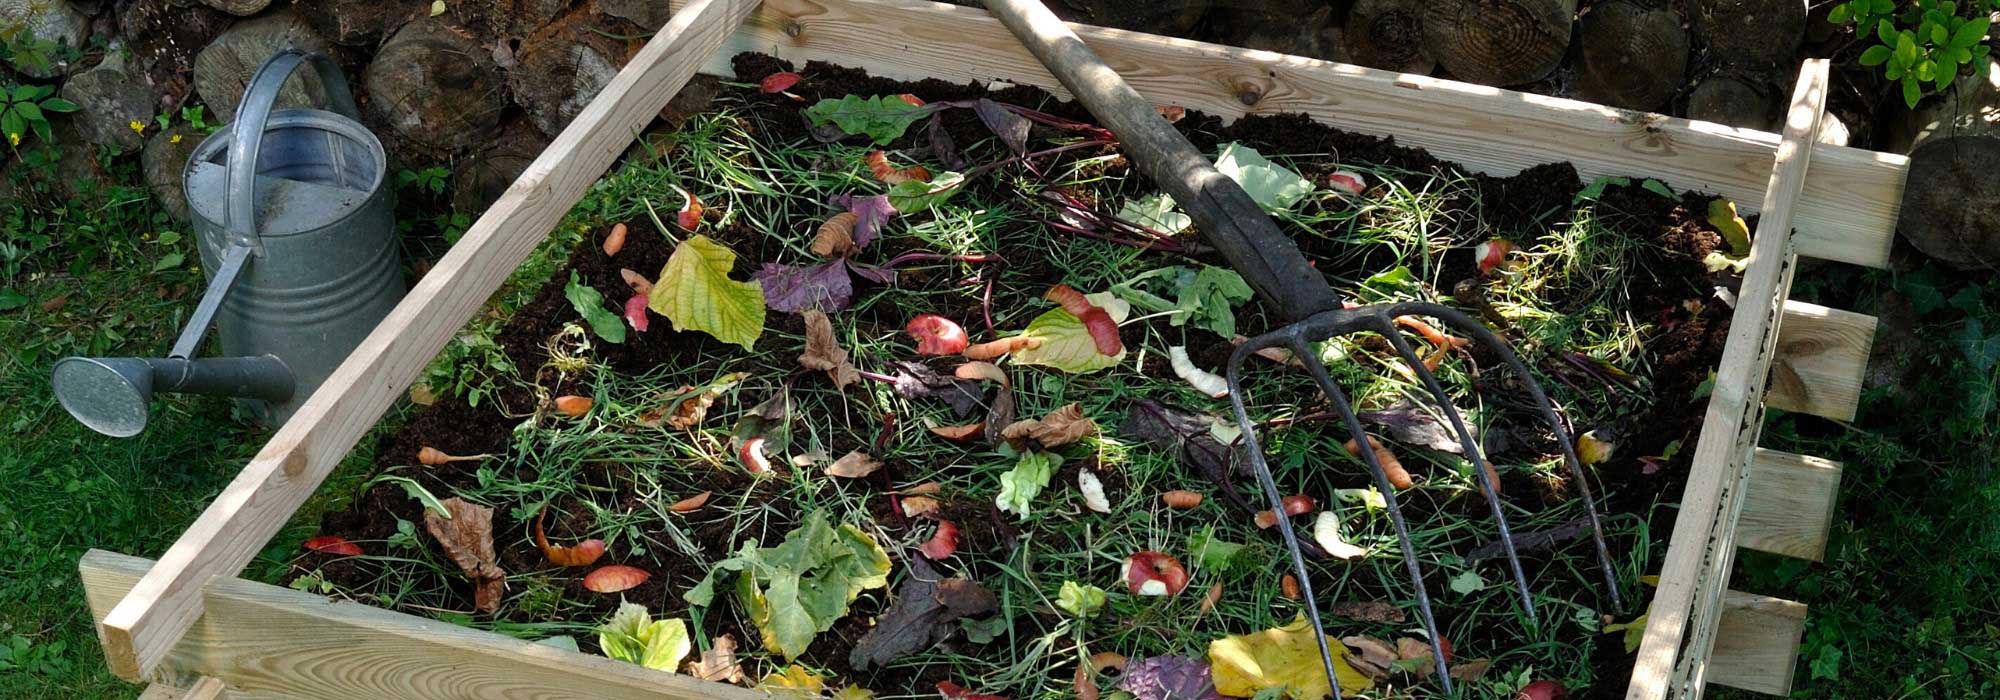 Nos astuces pour bien gérer votre compost en été